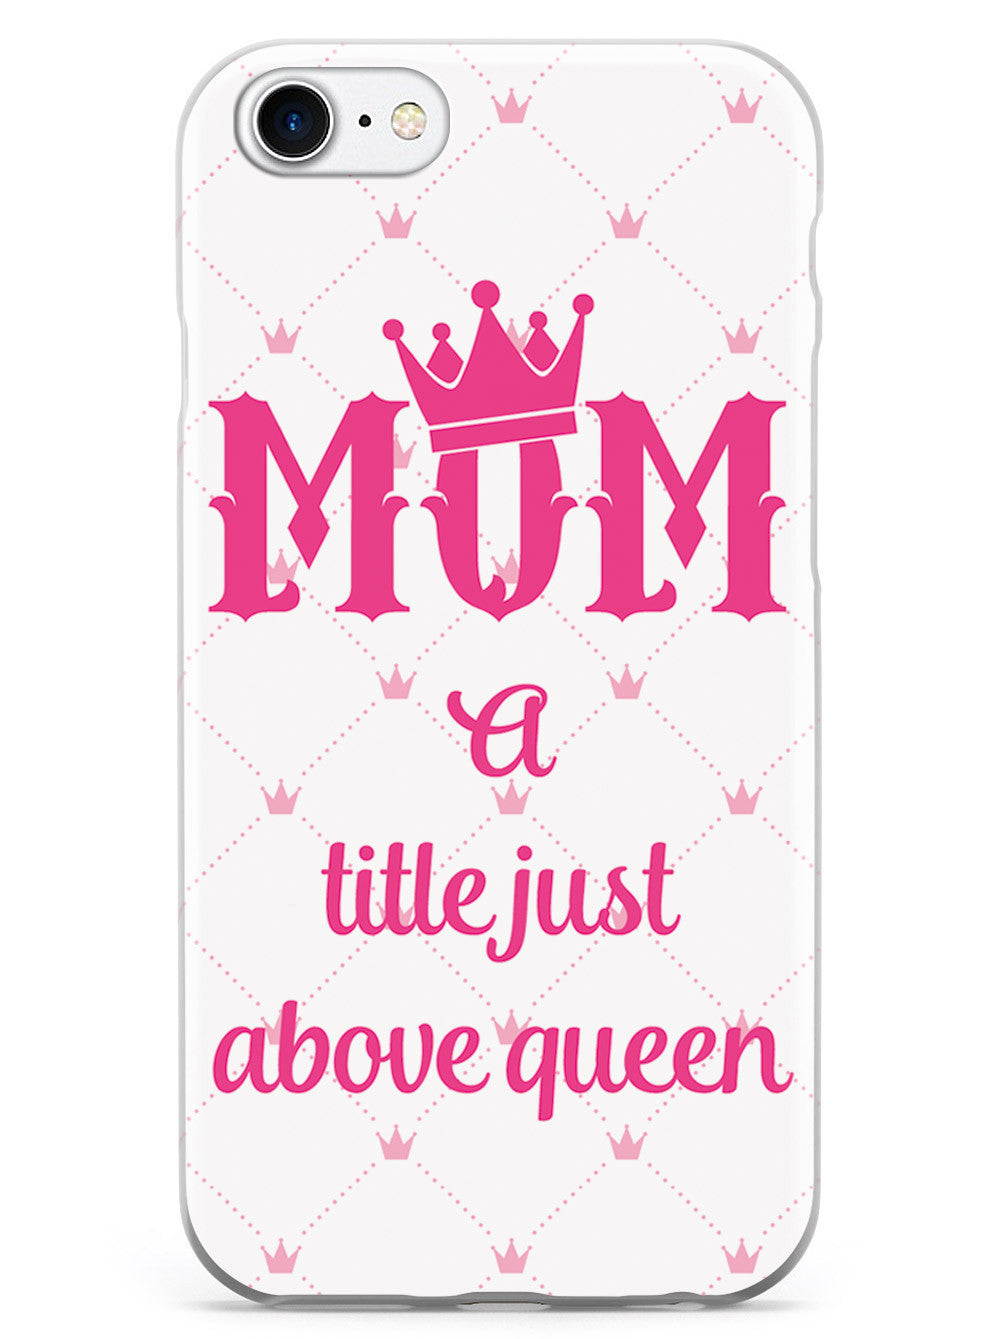 Queen Mom Case